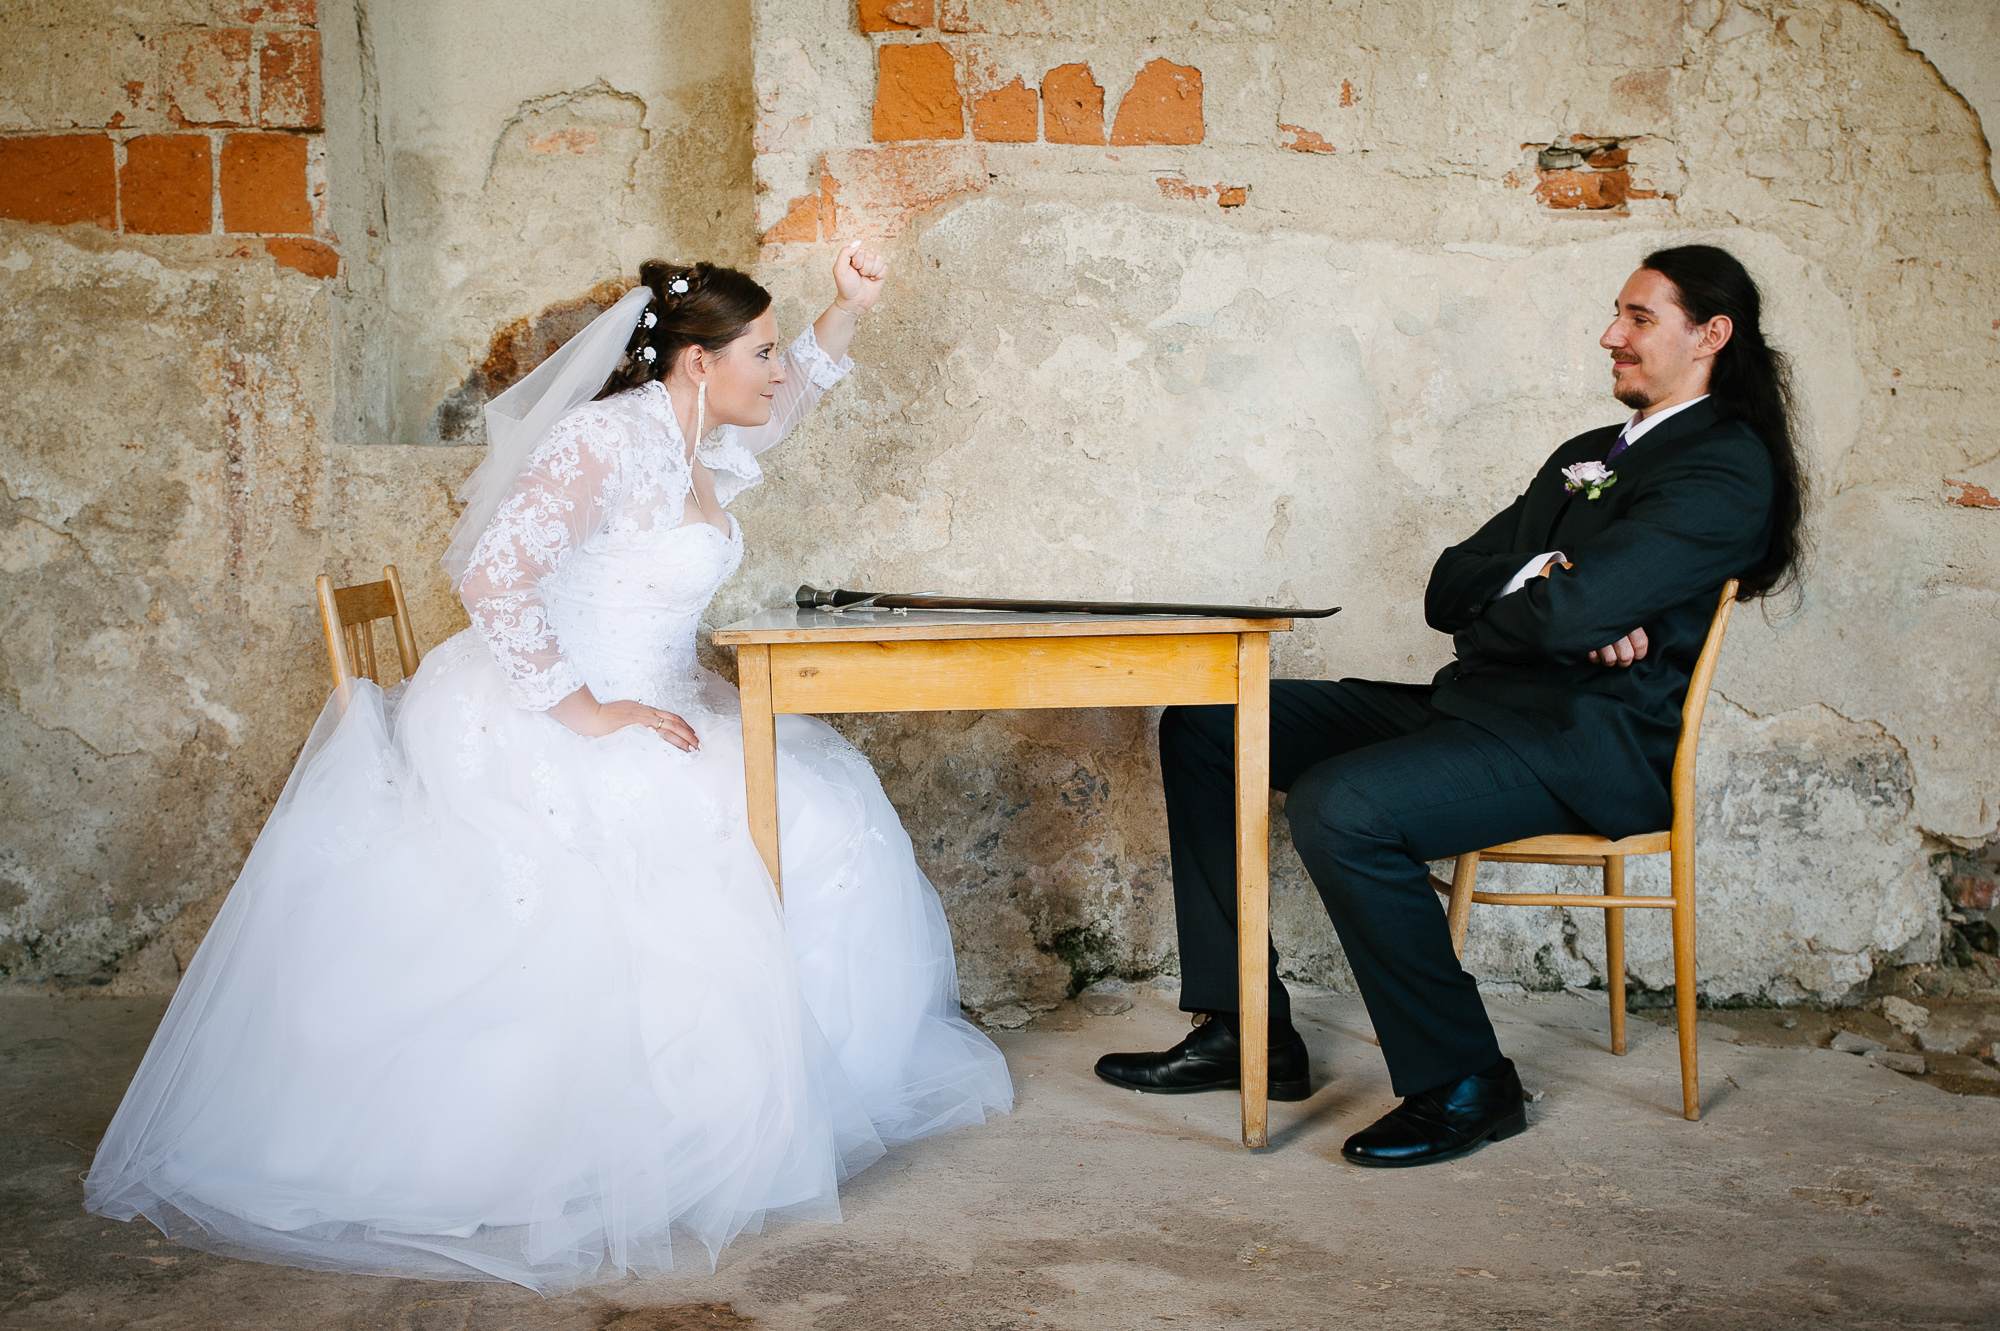 Svatební fotograf, Habrovany, Olšany, jižní Morava